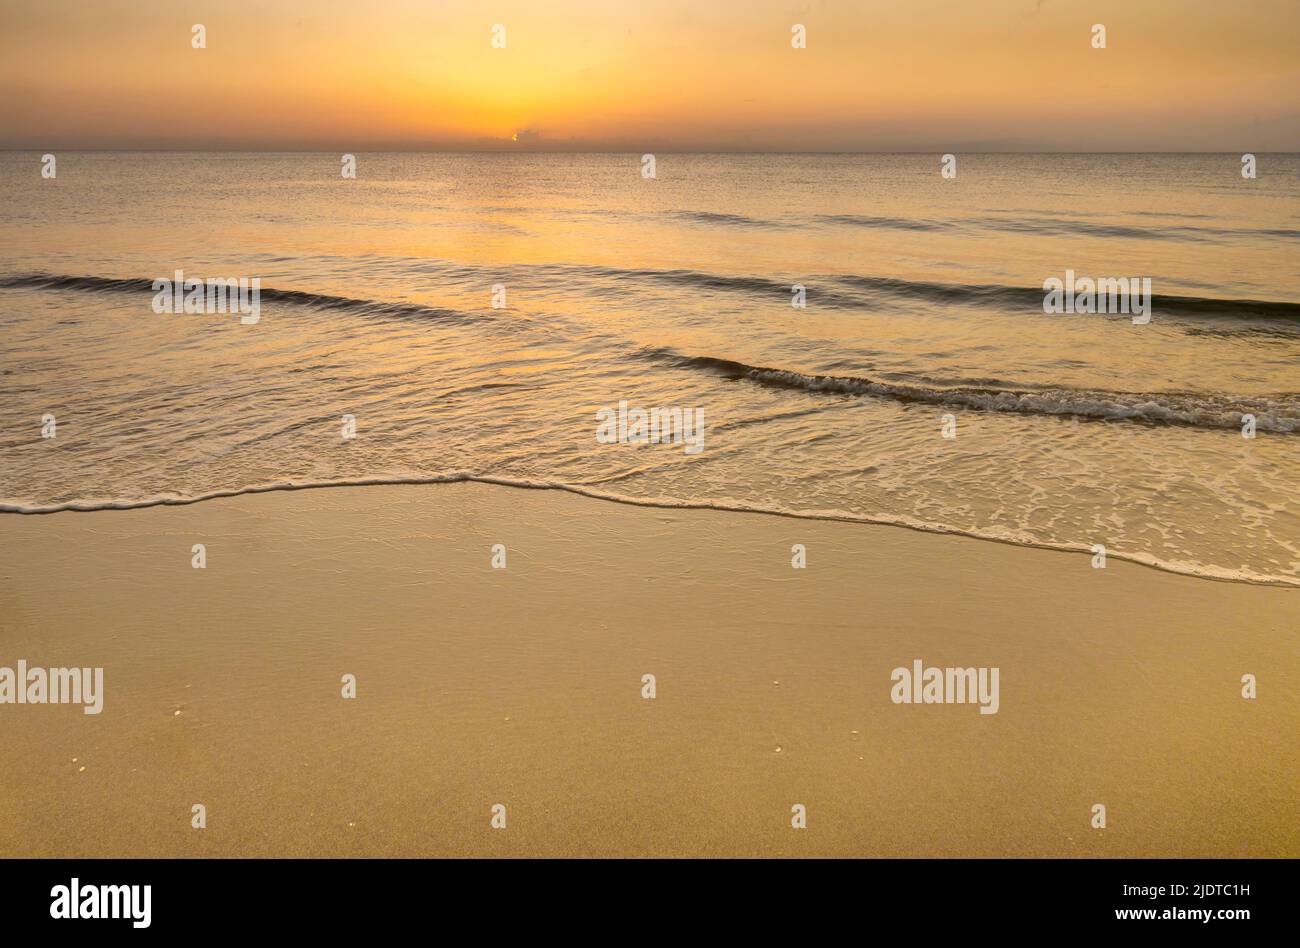 Surf paisible sur l'océan se lavant sur la plage au lever du soleil Banque D'Images